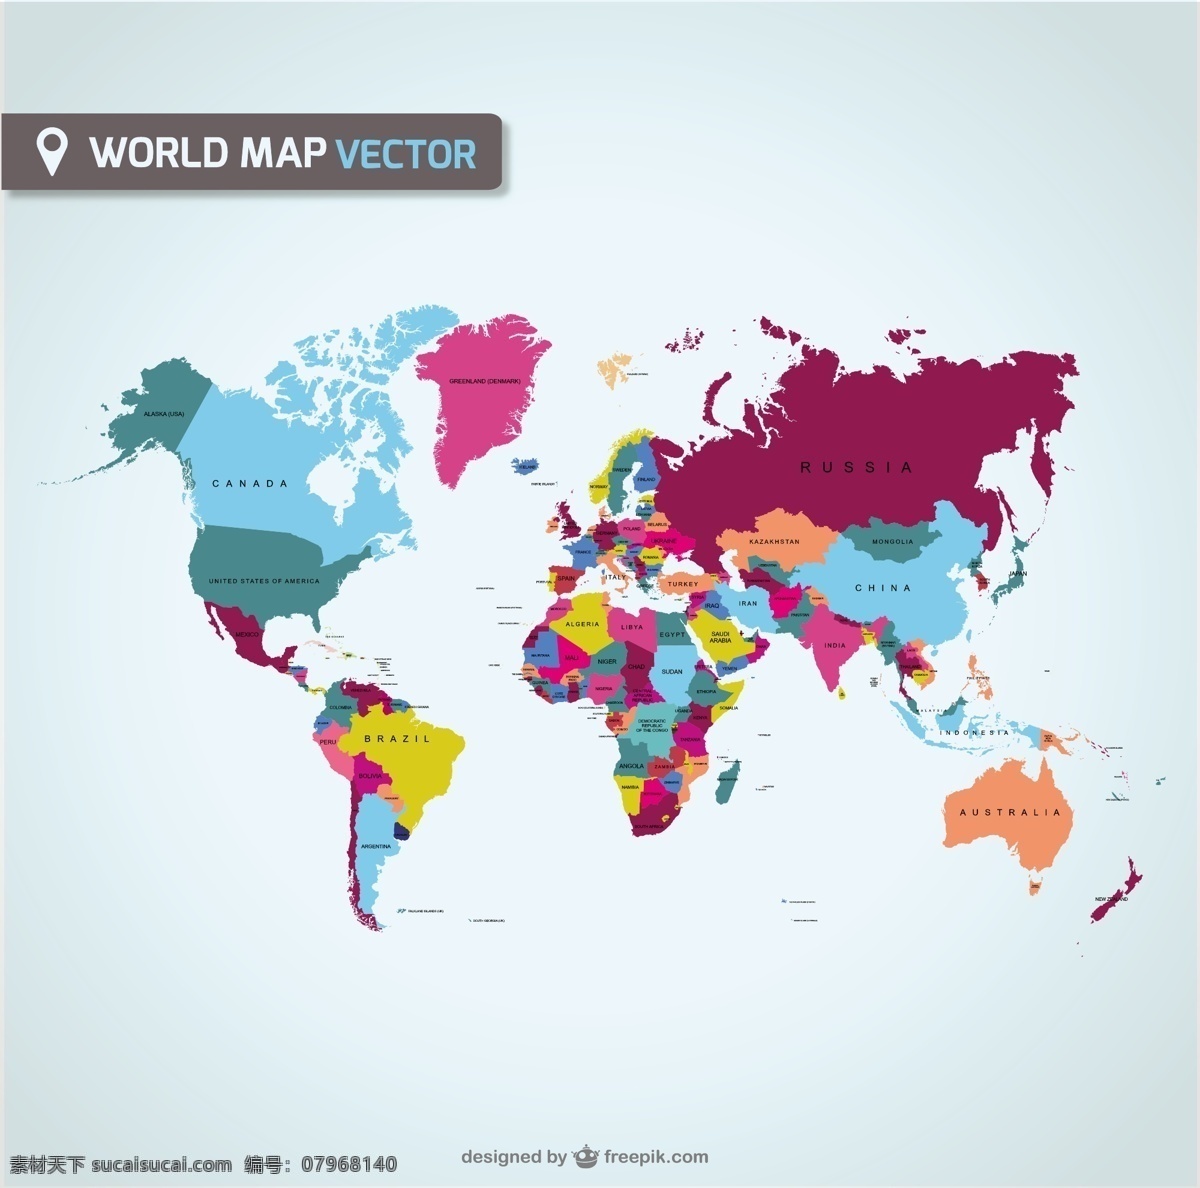 扁平化 彩色 世界地图 矢量 源文件 ai格式